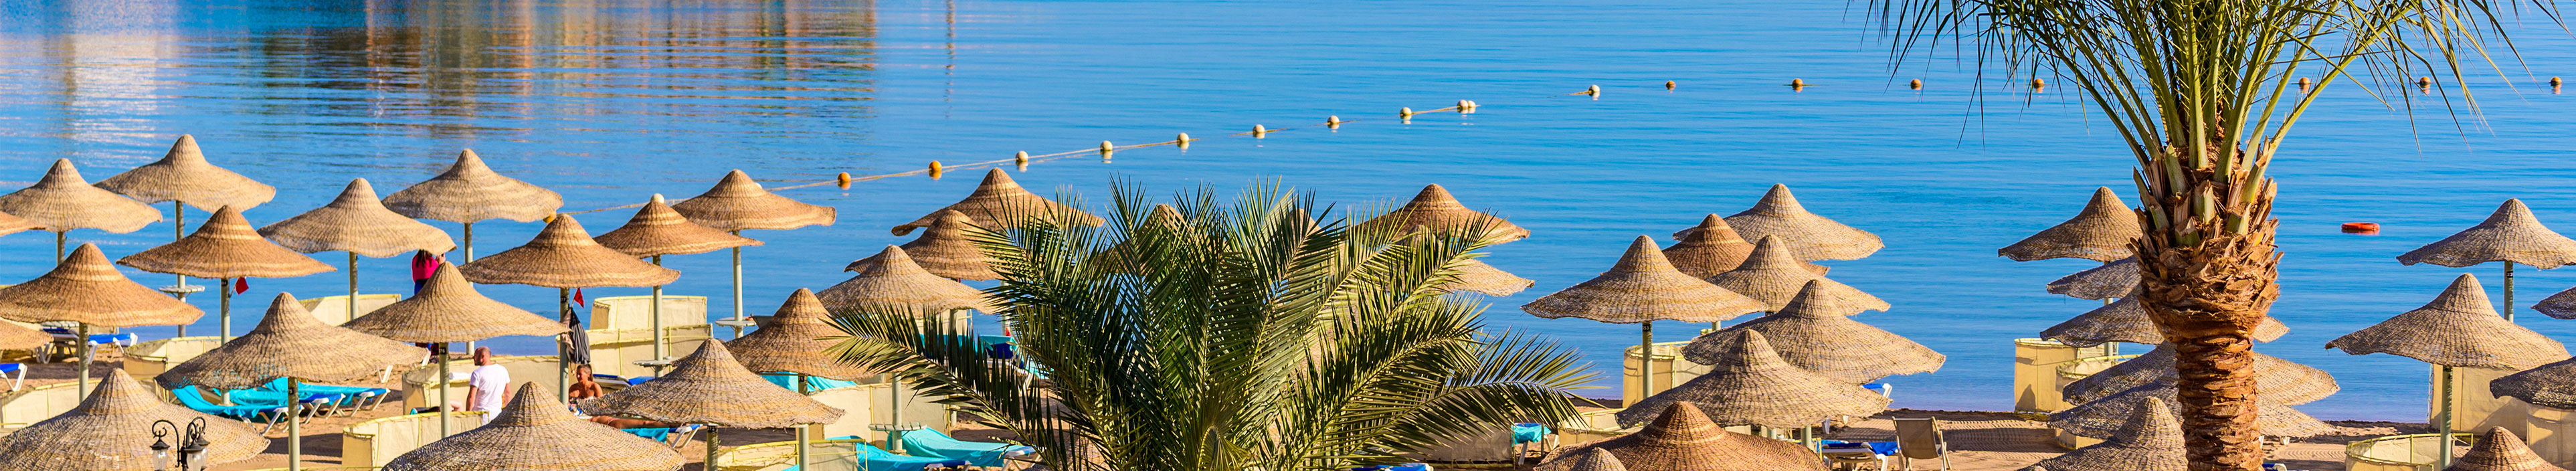 Entspannen am paradiesischen Strand - Liegestuhl und Sonnenschirme - Reiseziel Hurghada, Ägypten